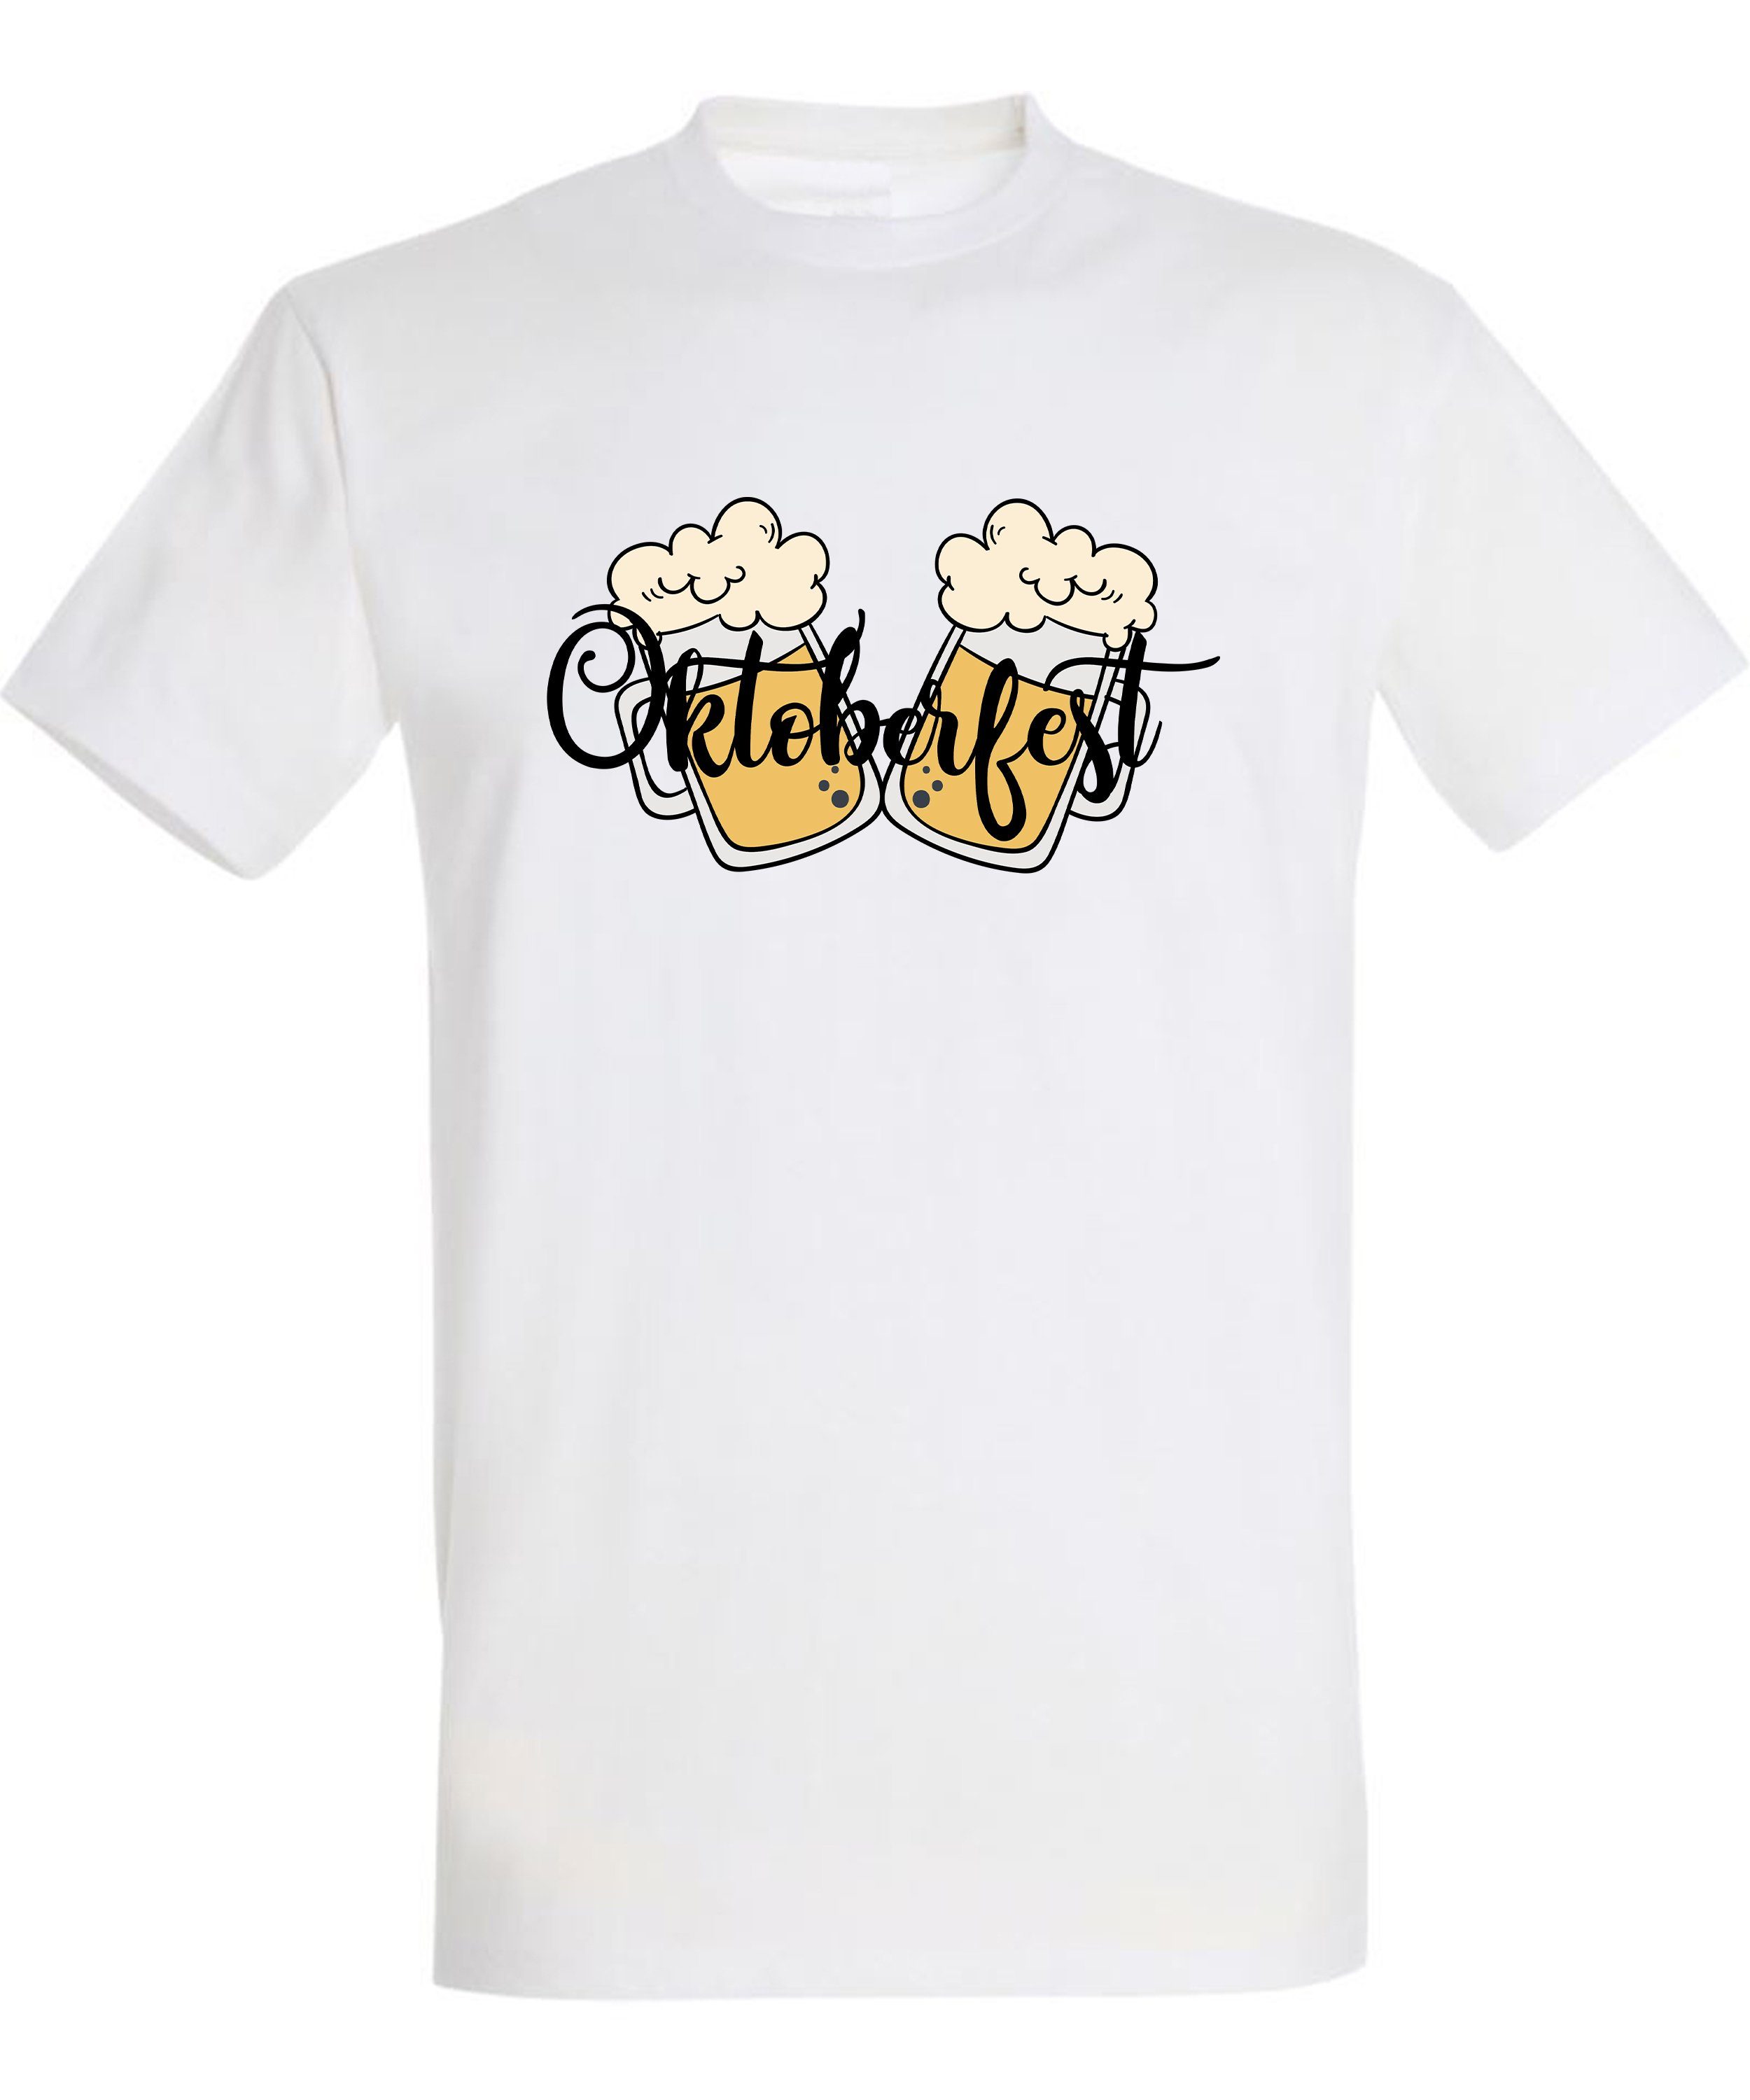 Baumwollshirt Fit, Oktoberfest Trinkshirt Herren Aufdruck mit T-Shirt Party T-Shirt Regular weiss - Biergläser 2 MyDesign24 i326 Shirt